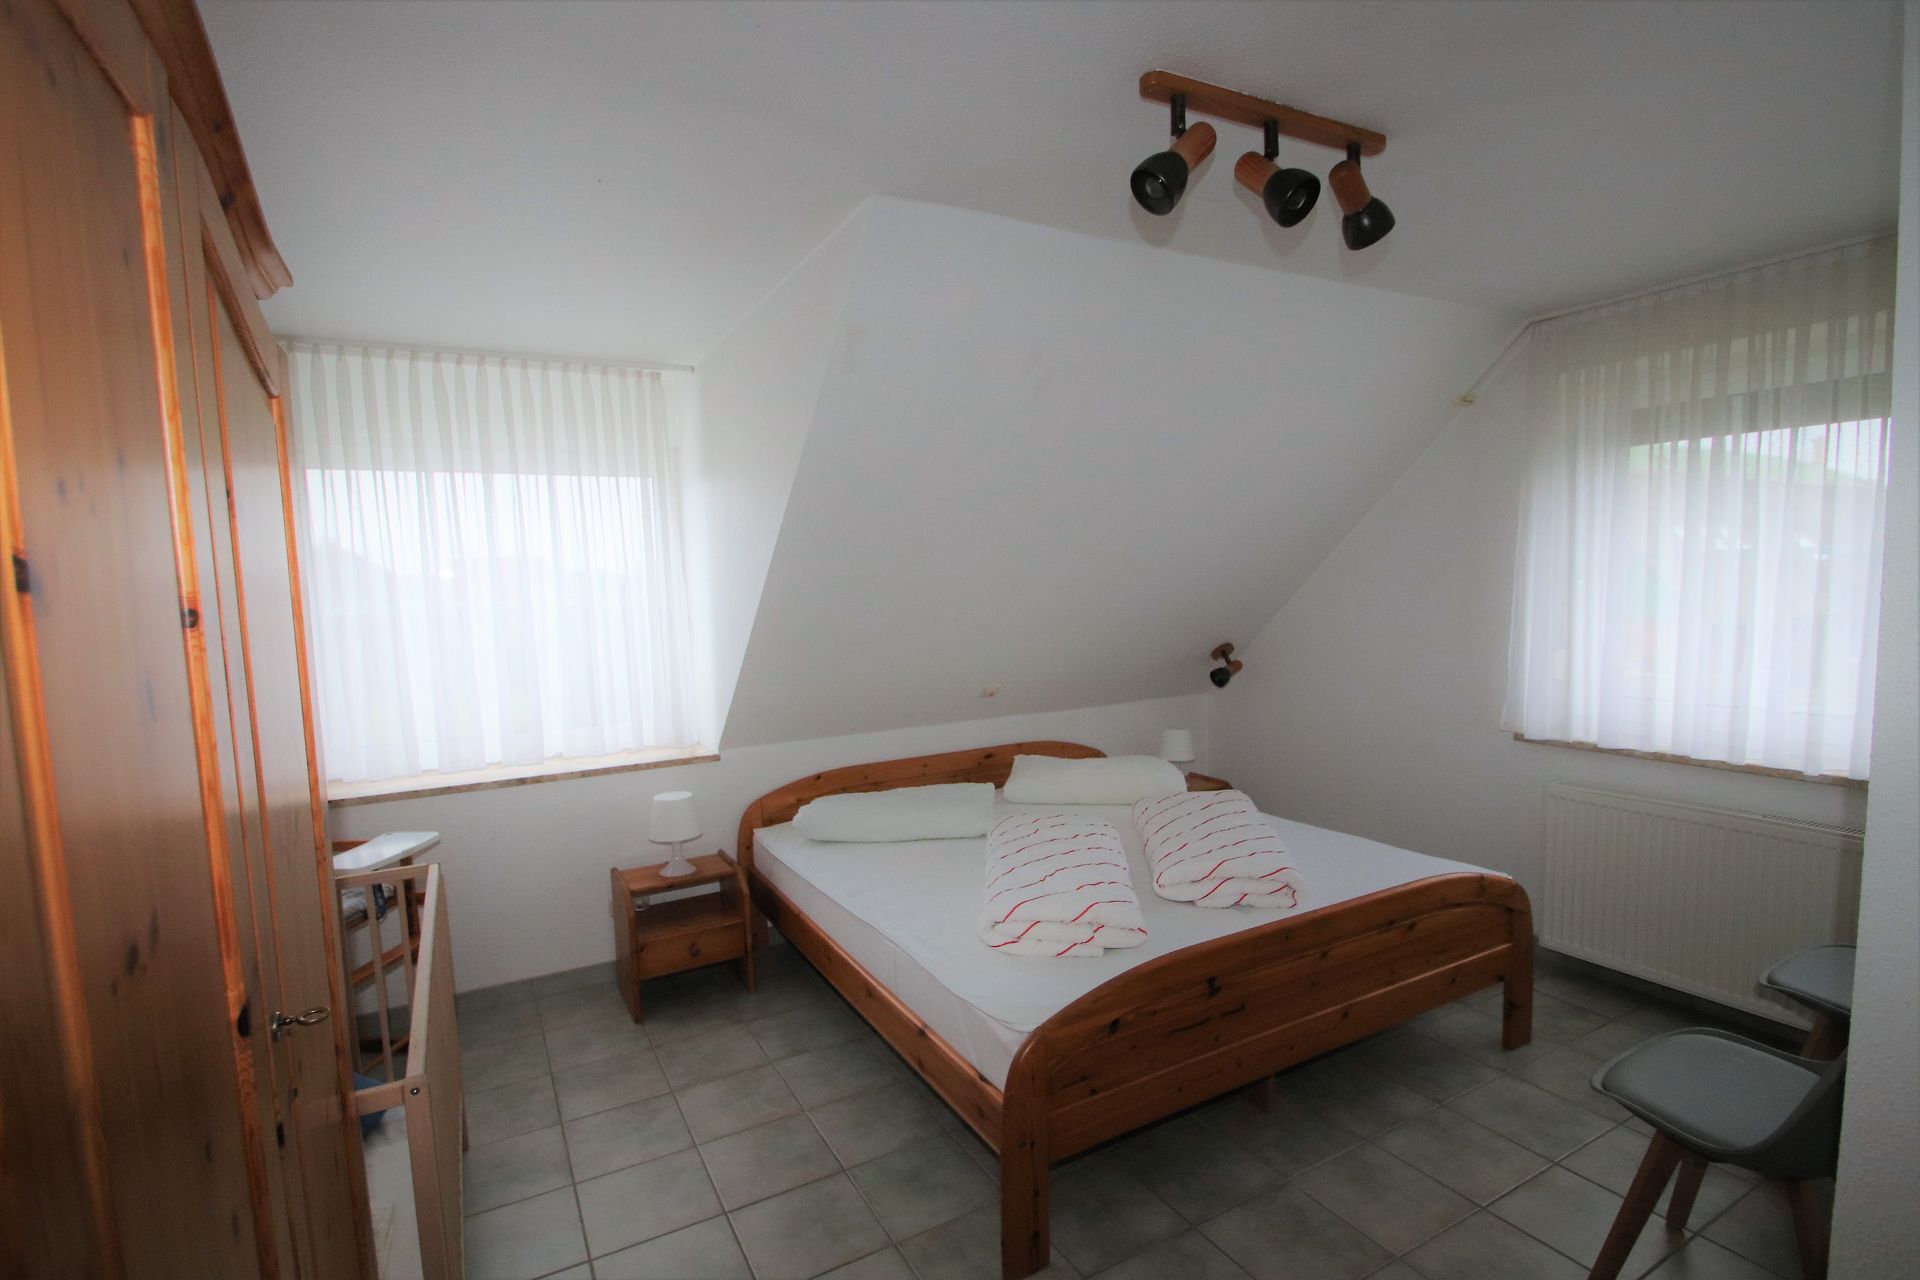 Schlafraum mit Doppelbett und Babybett im  Obergeschoss Tötel 1b Ferienhaus Nordsee Friedrichskoog